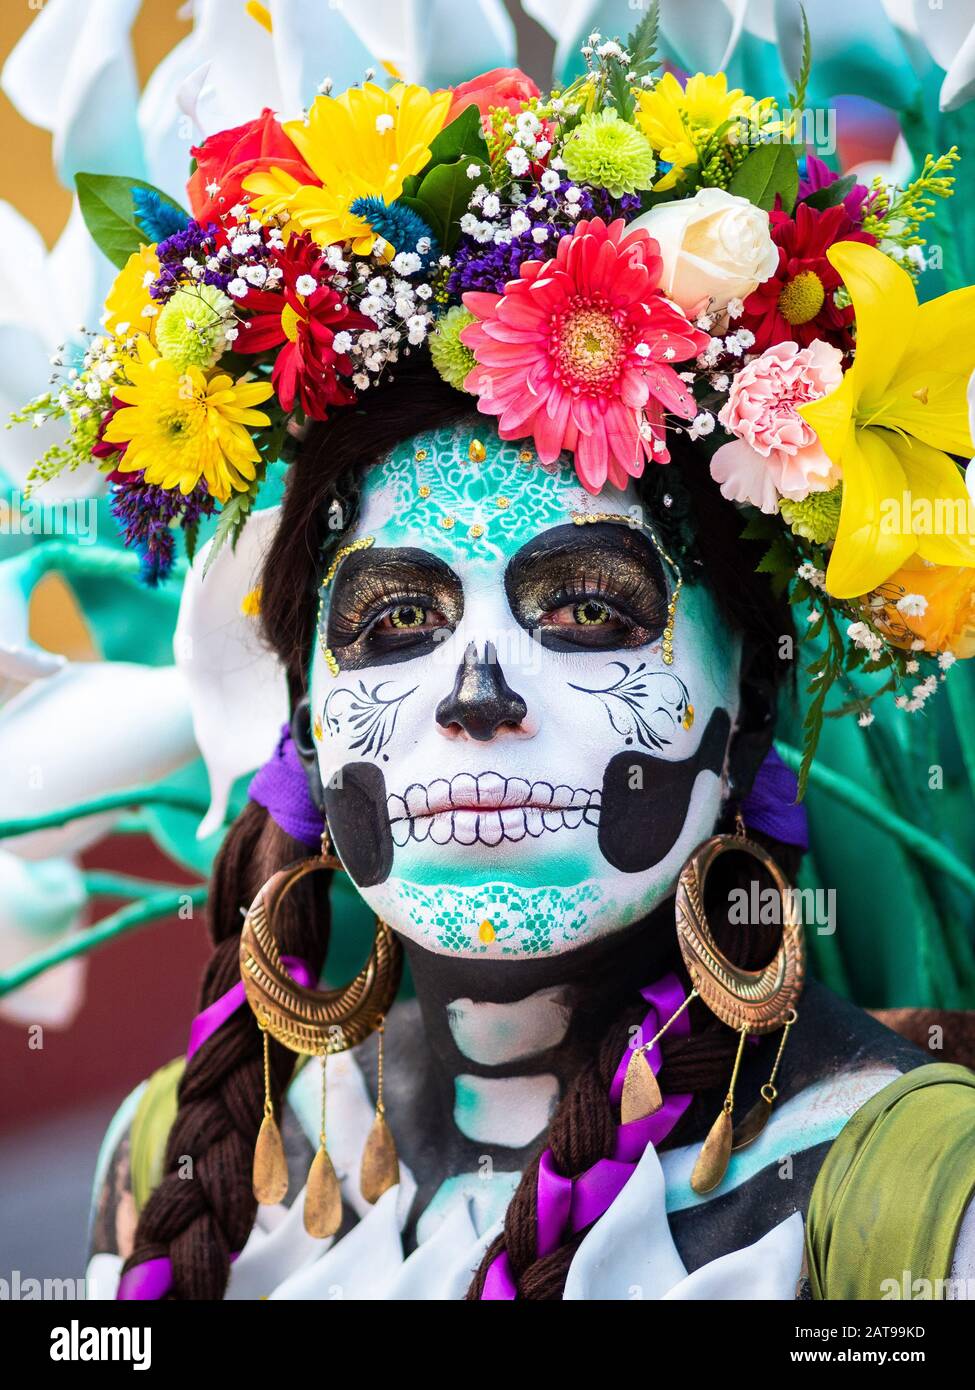 Ritratto di una donna con bellissimi costumi a tema giorno dei morti e trucco cranio per le strade di Guanajuato, Messico. Foto Stock